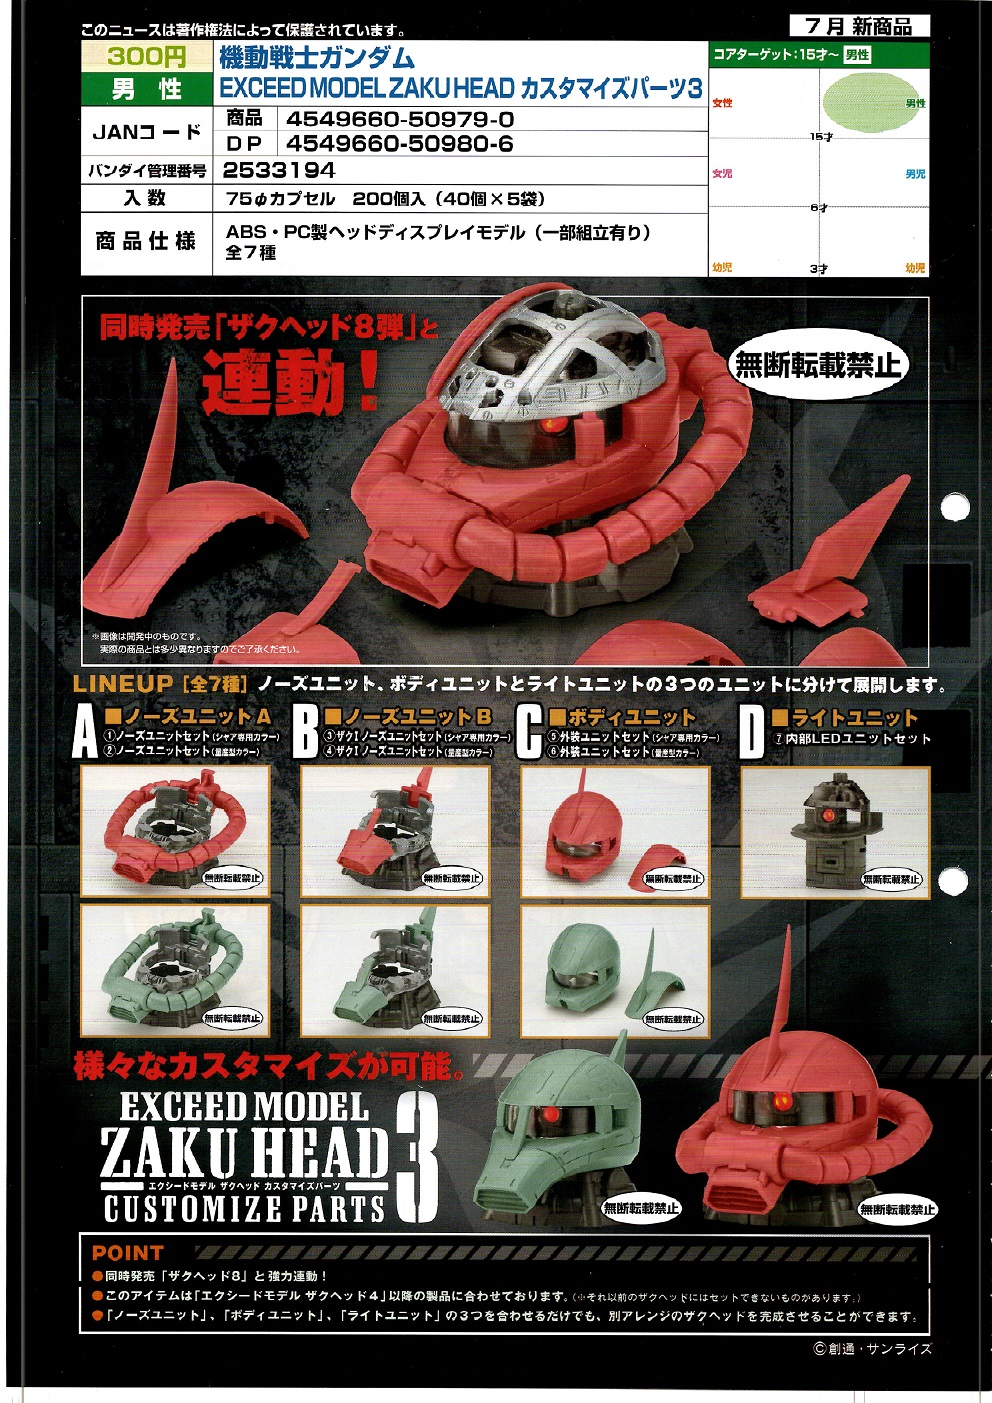 【A】300日元扭蛋 拼装模型 高达 扎古头部配件 第3弹 全7种 (1袋40个) 509790